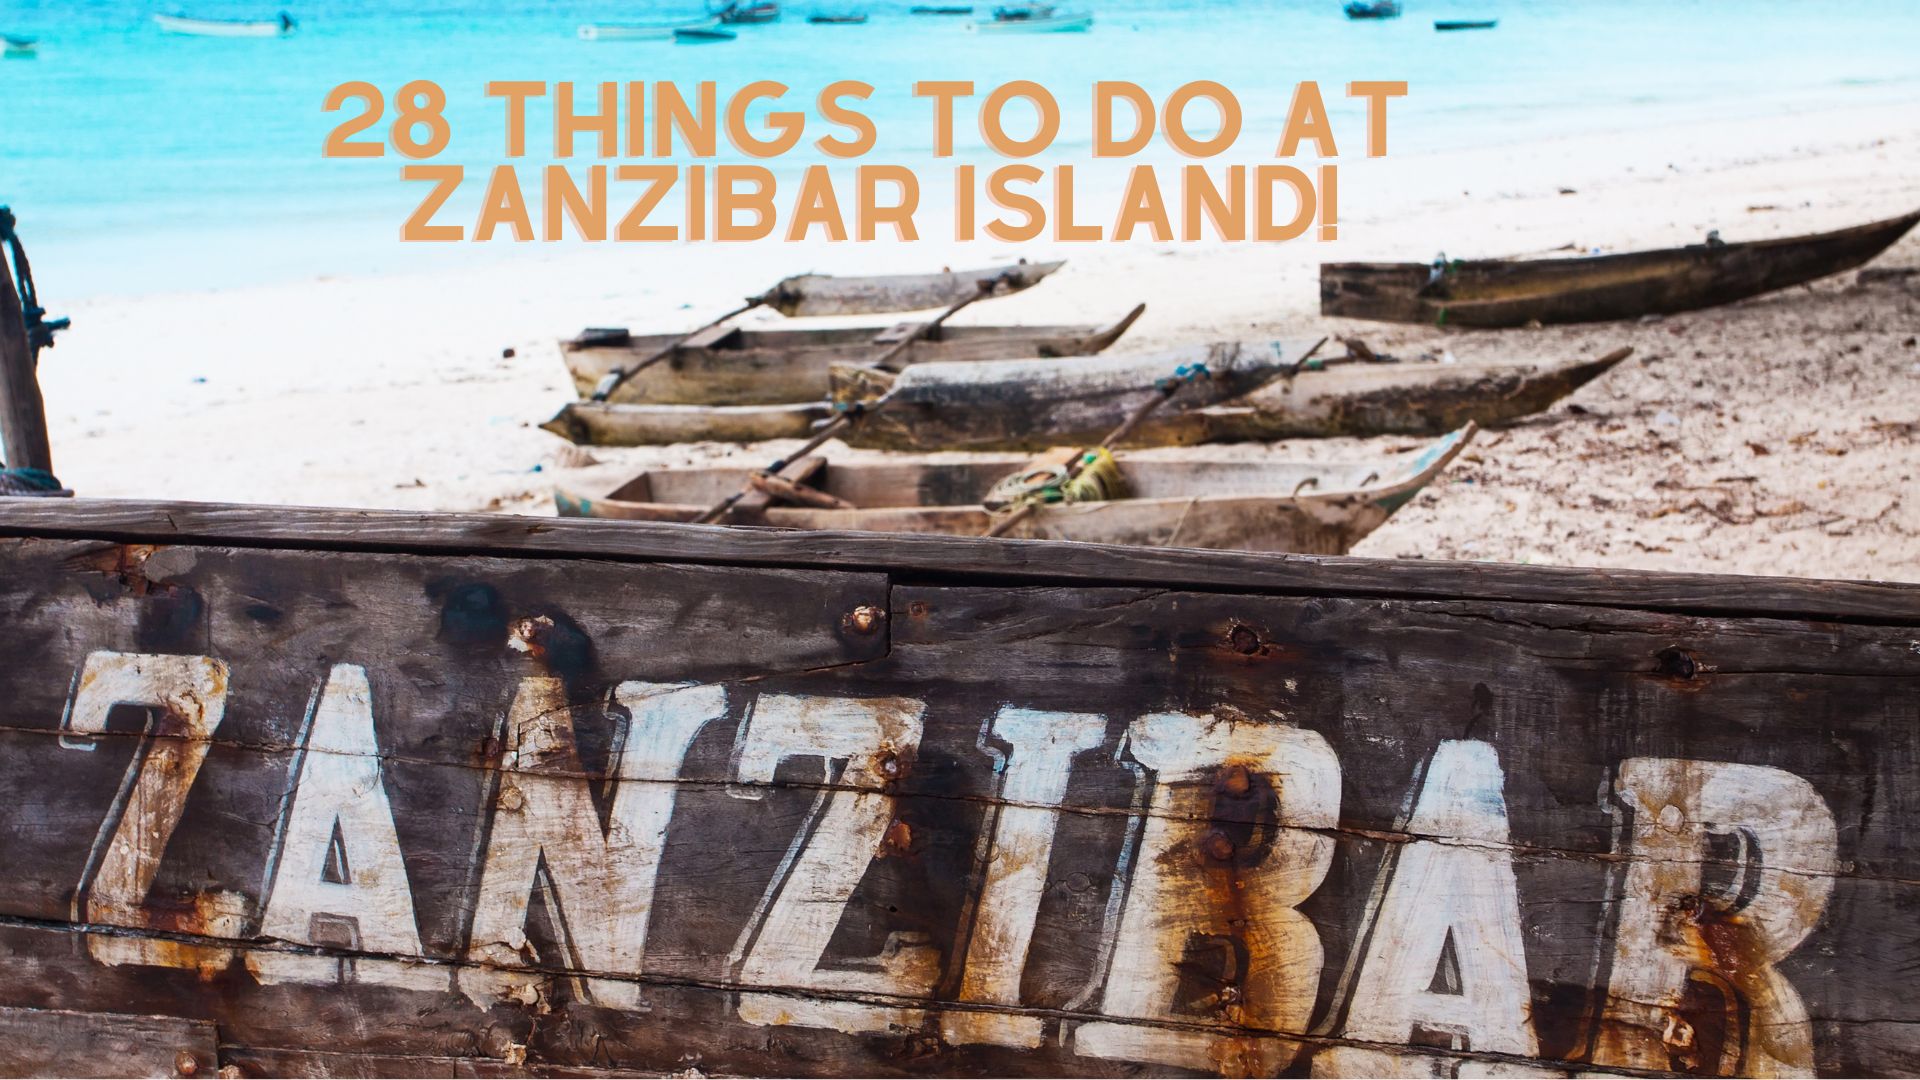 28 things to do at zanzibar island